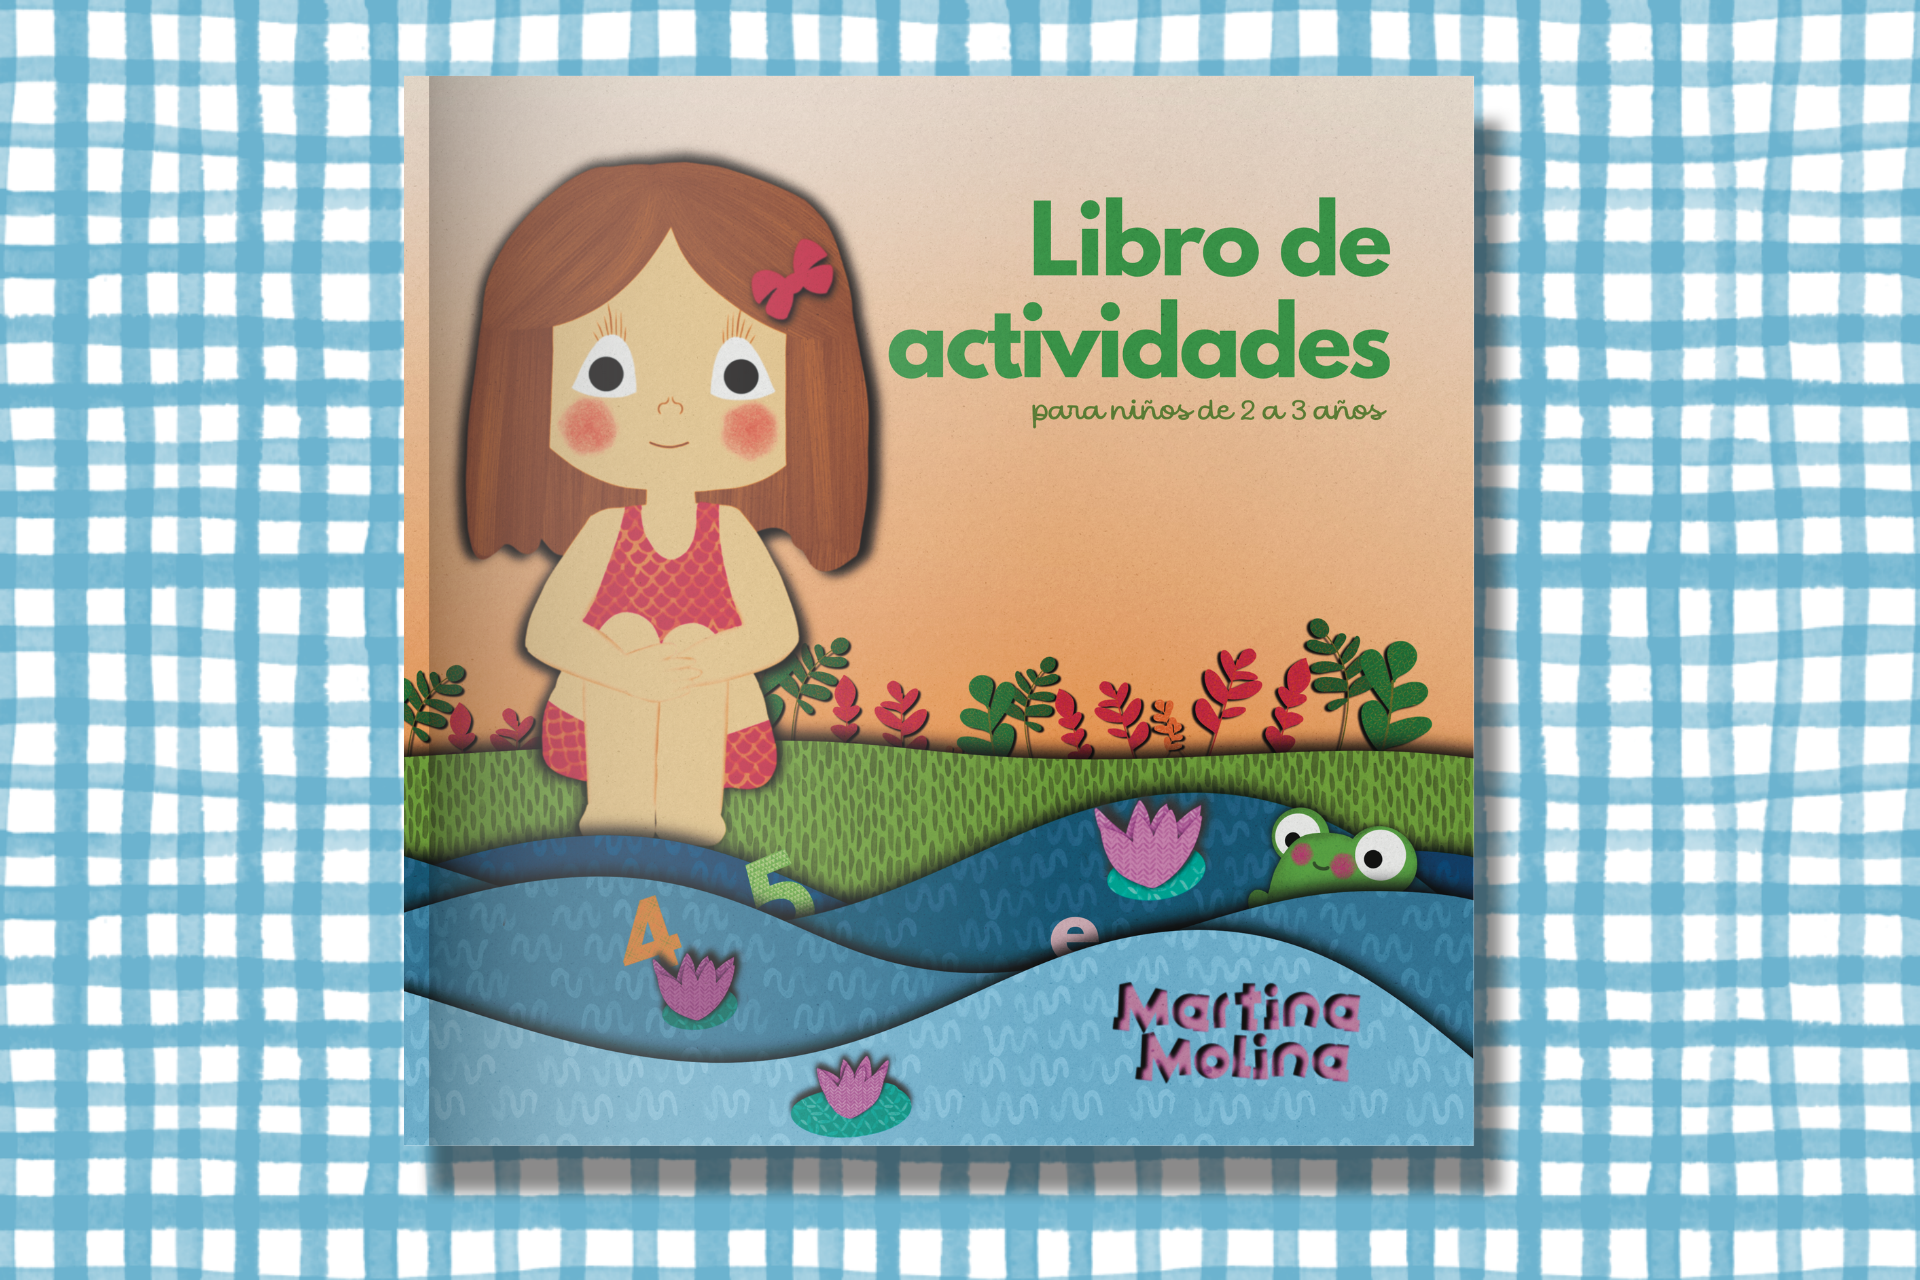 Libros para niños de 2 a 3 años de edad (fotos)